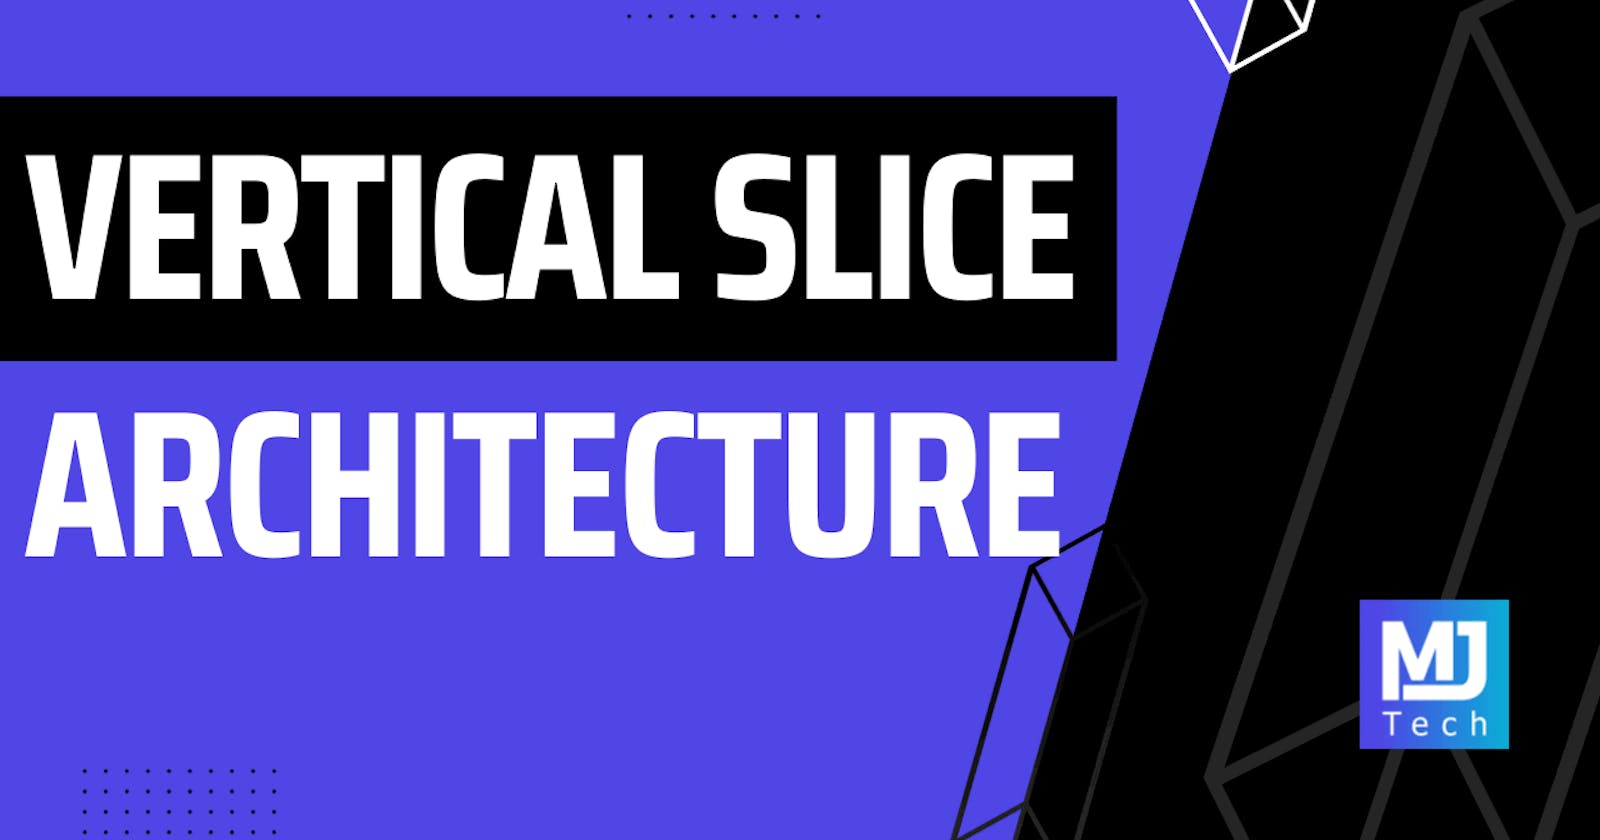 Vertical Slice Architecture